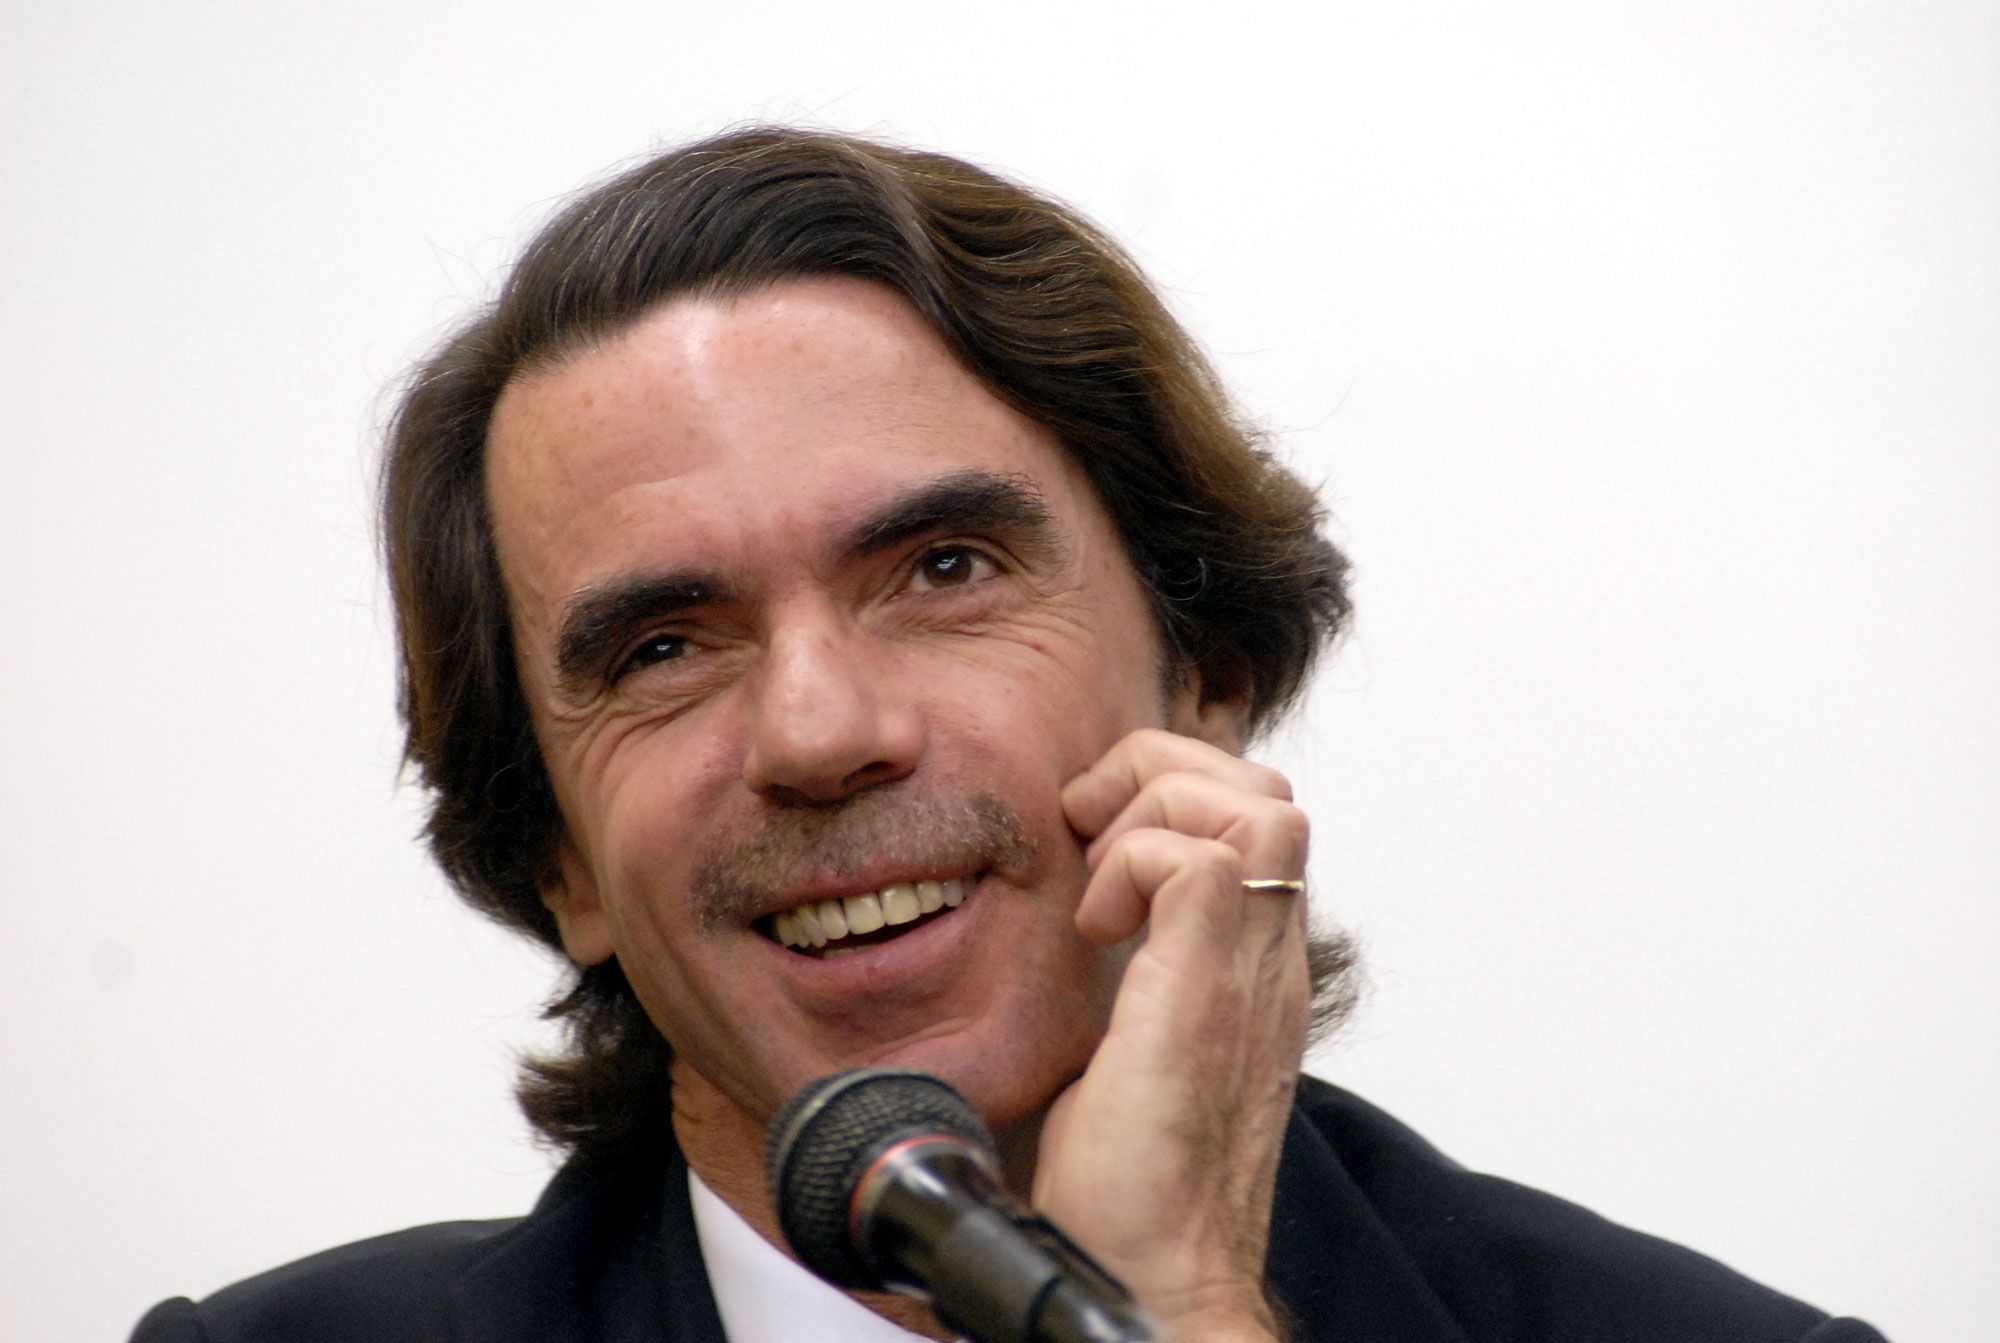 Confirmat: Aznar serà entrevistat per Osborne el proper dimecres